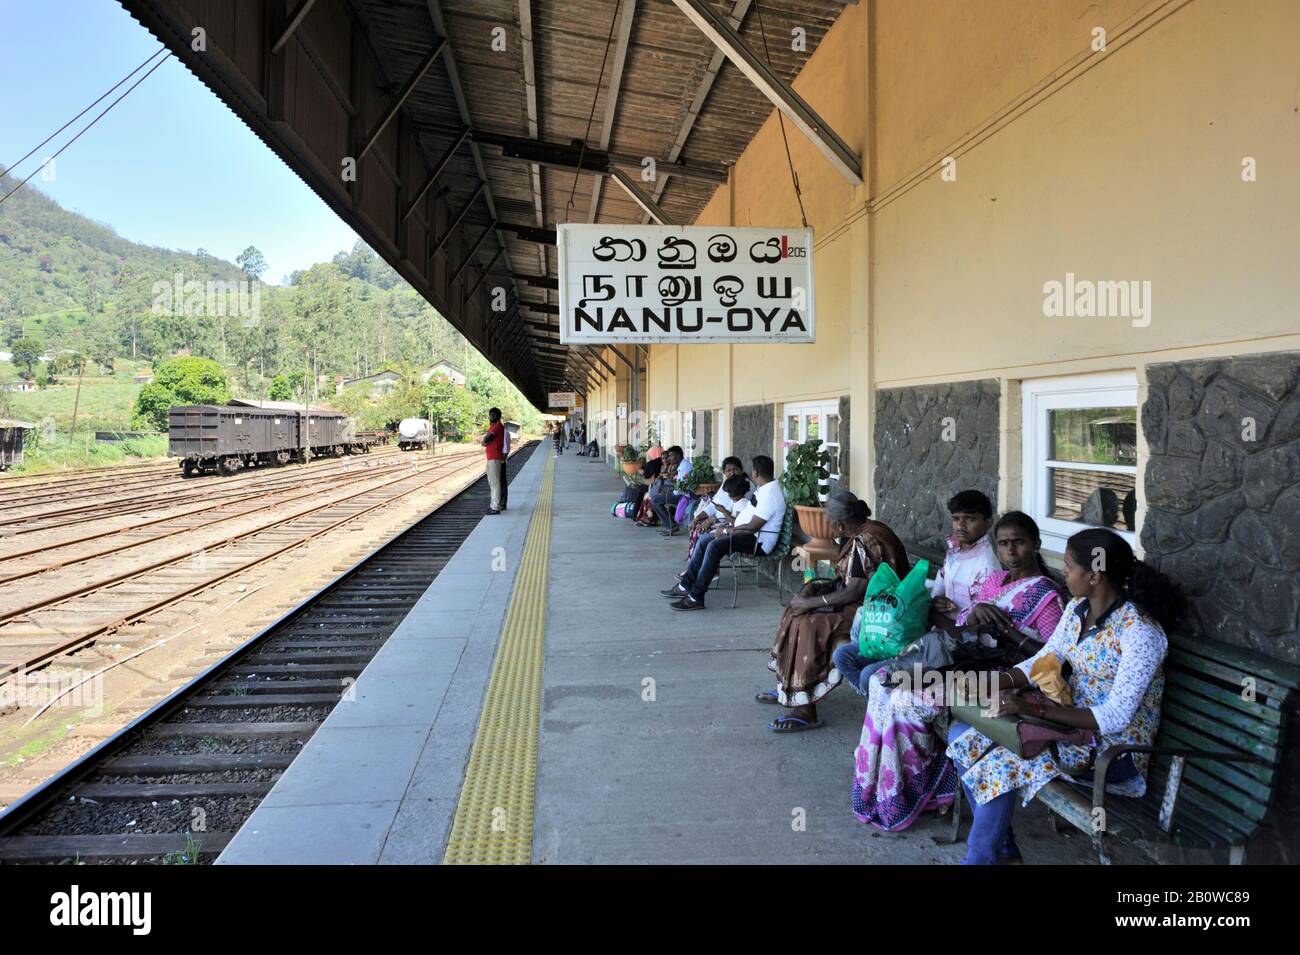 Sri Lanka, Nuwara Eliya, Nanu-Oya train station Stock Photo